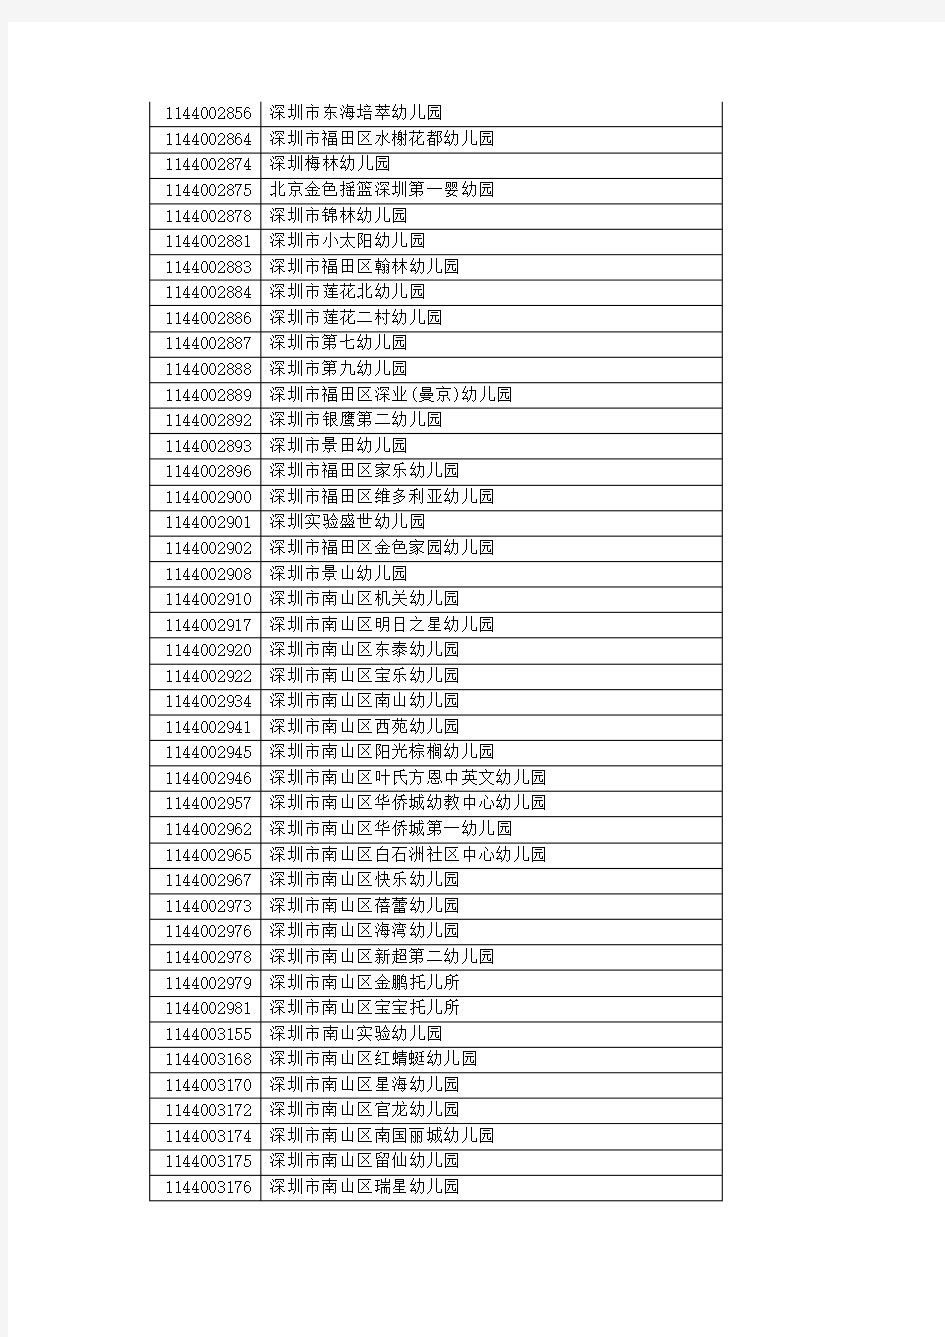 2016深圳市各学校标识码